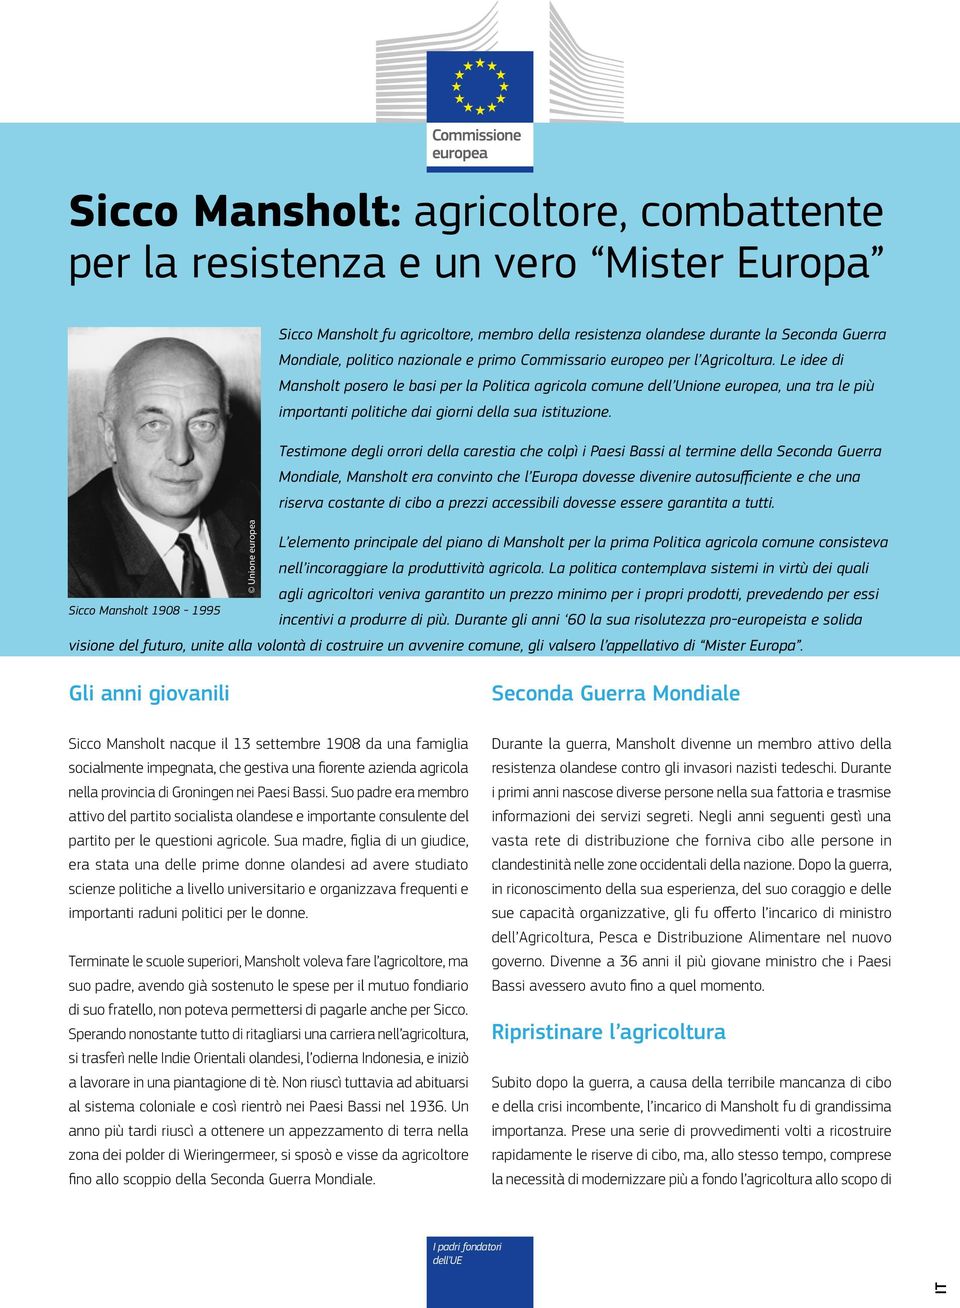 Le idee di Mansholt posero le basi per la Politica agricola comune dell Unione europea, una tra le più importanti politiche dai giorni della sua istituzione.